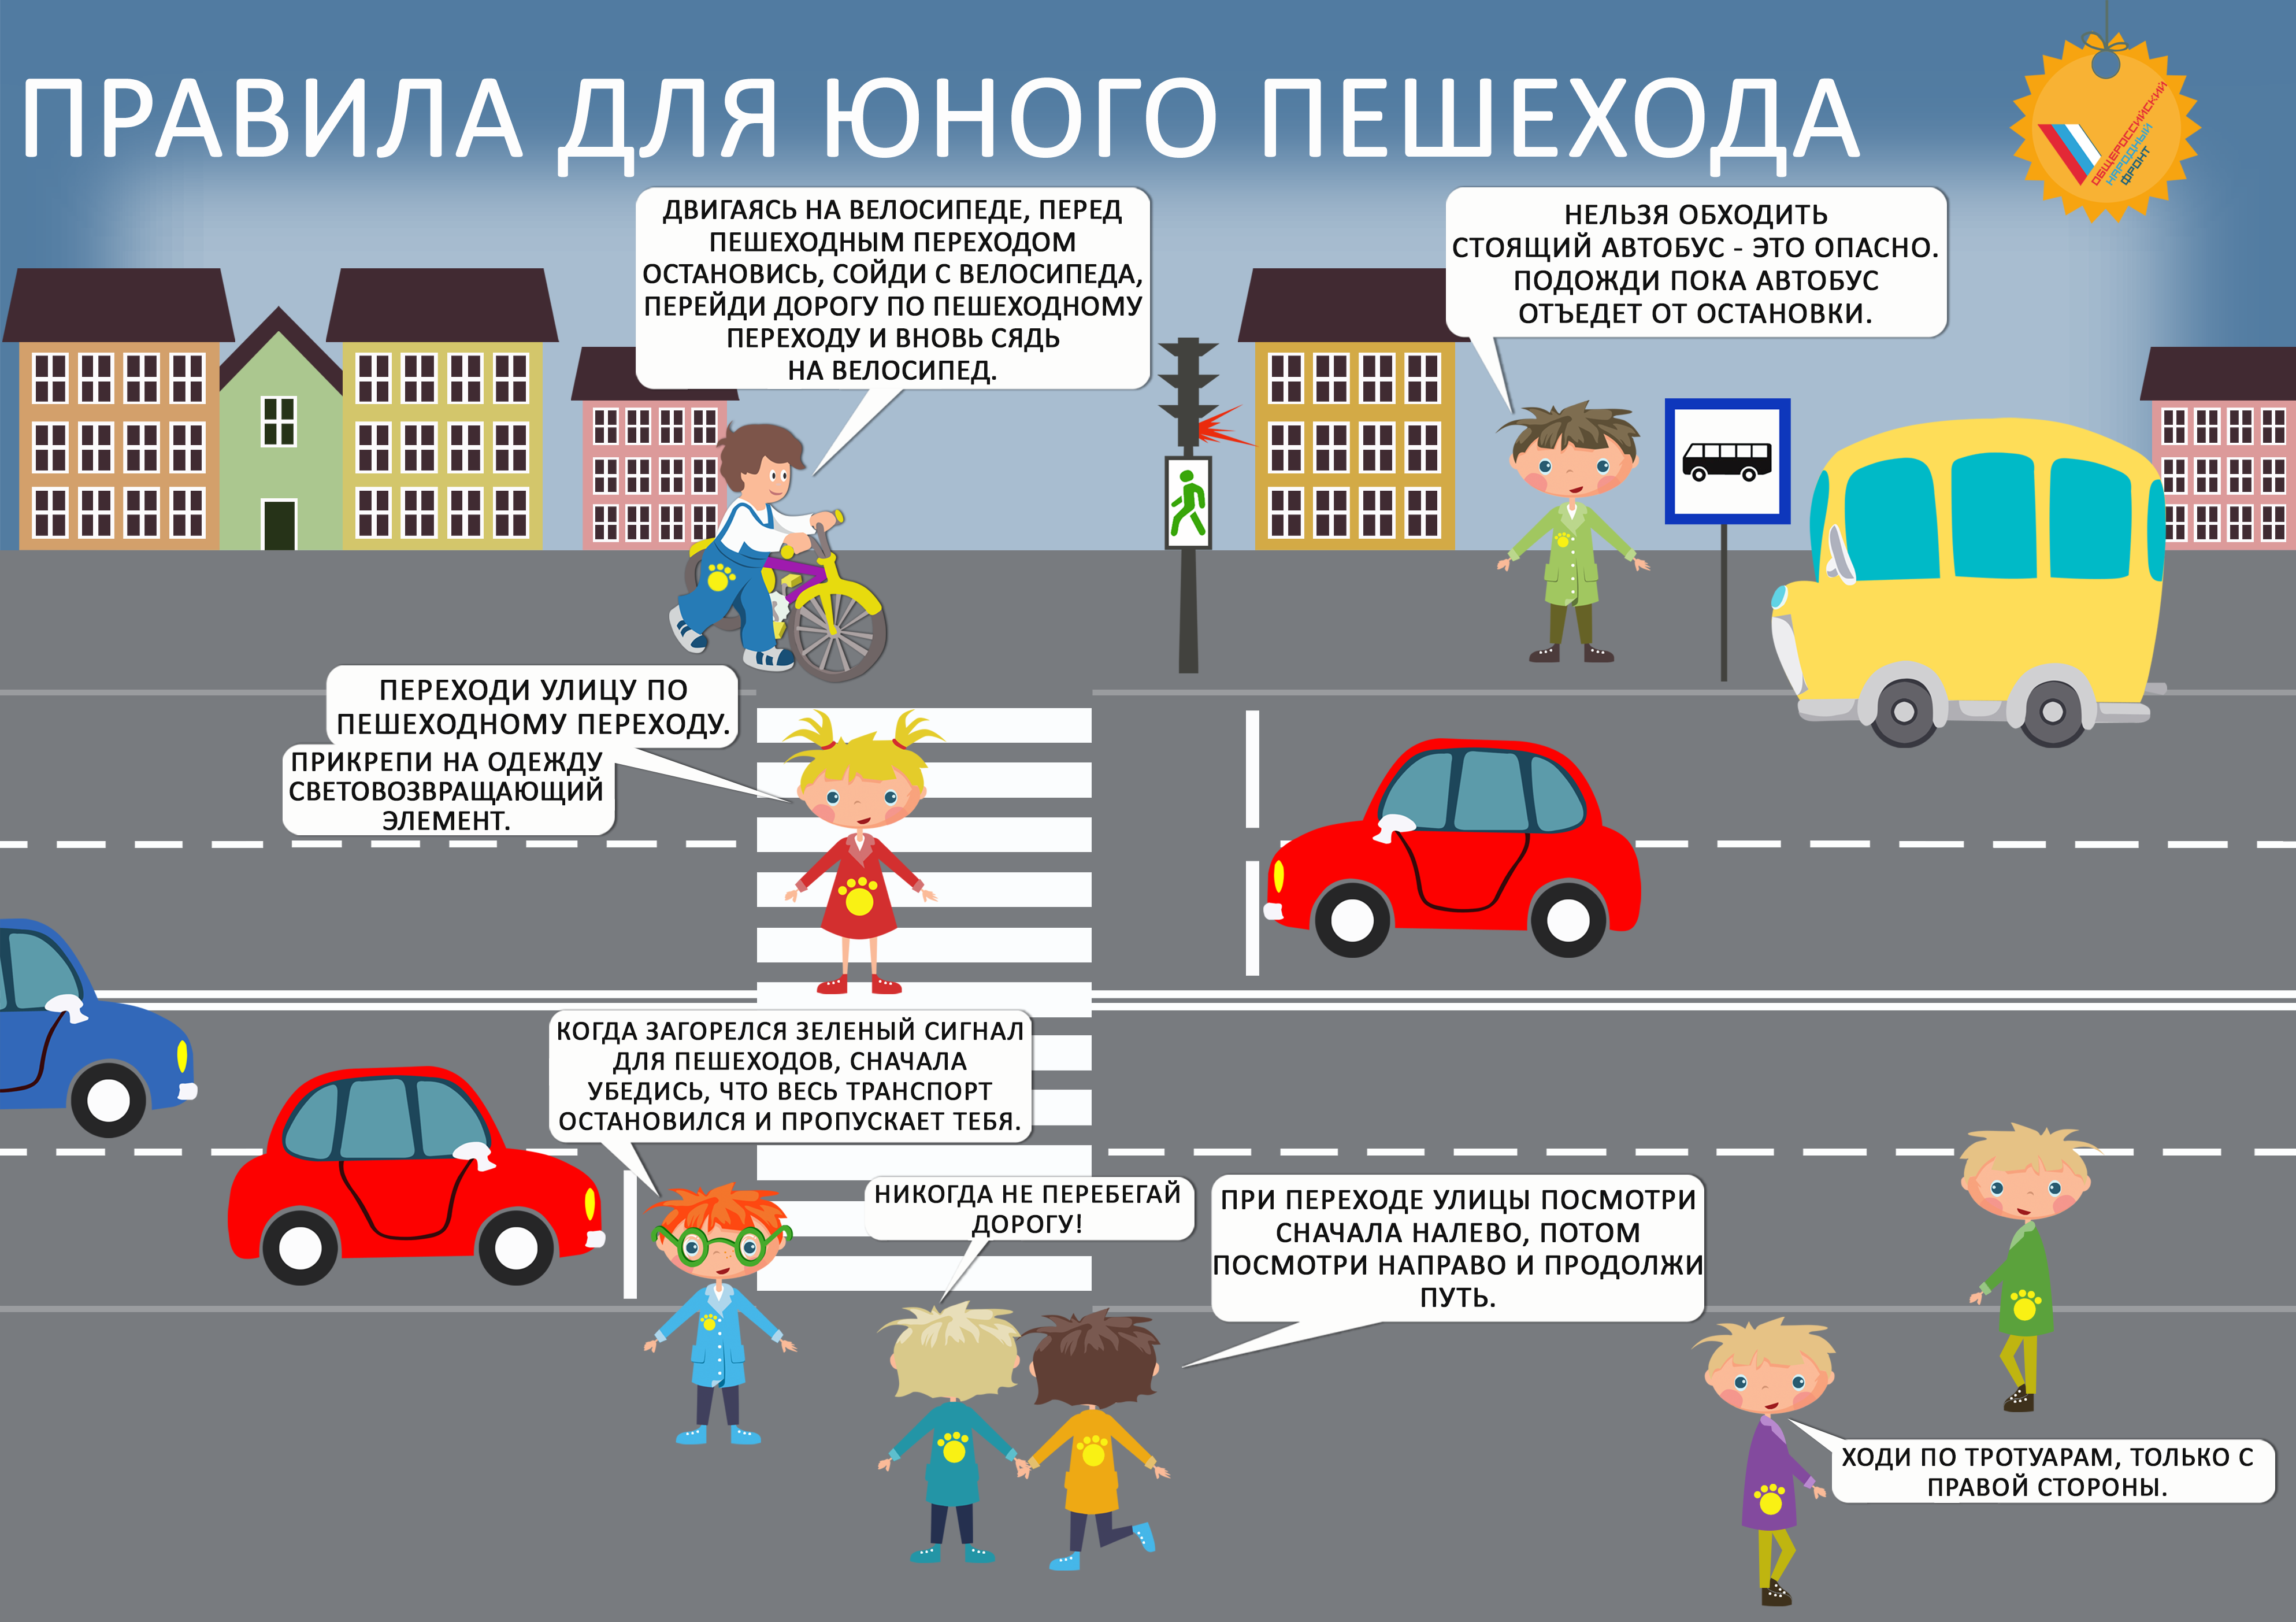 Правила дорожного движения термин. Правила дорожного движения для детей. Правила дорожного движения для пешеходов. Правила дорожного движения для пешеходов для детей. Правило дорожного движения для детей.